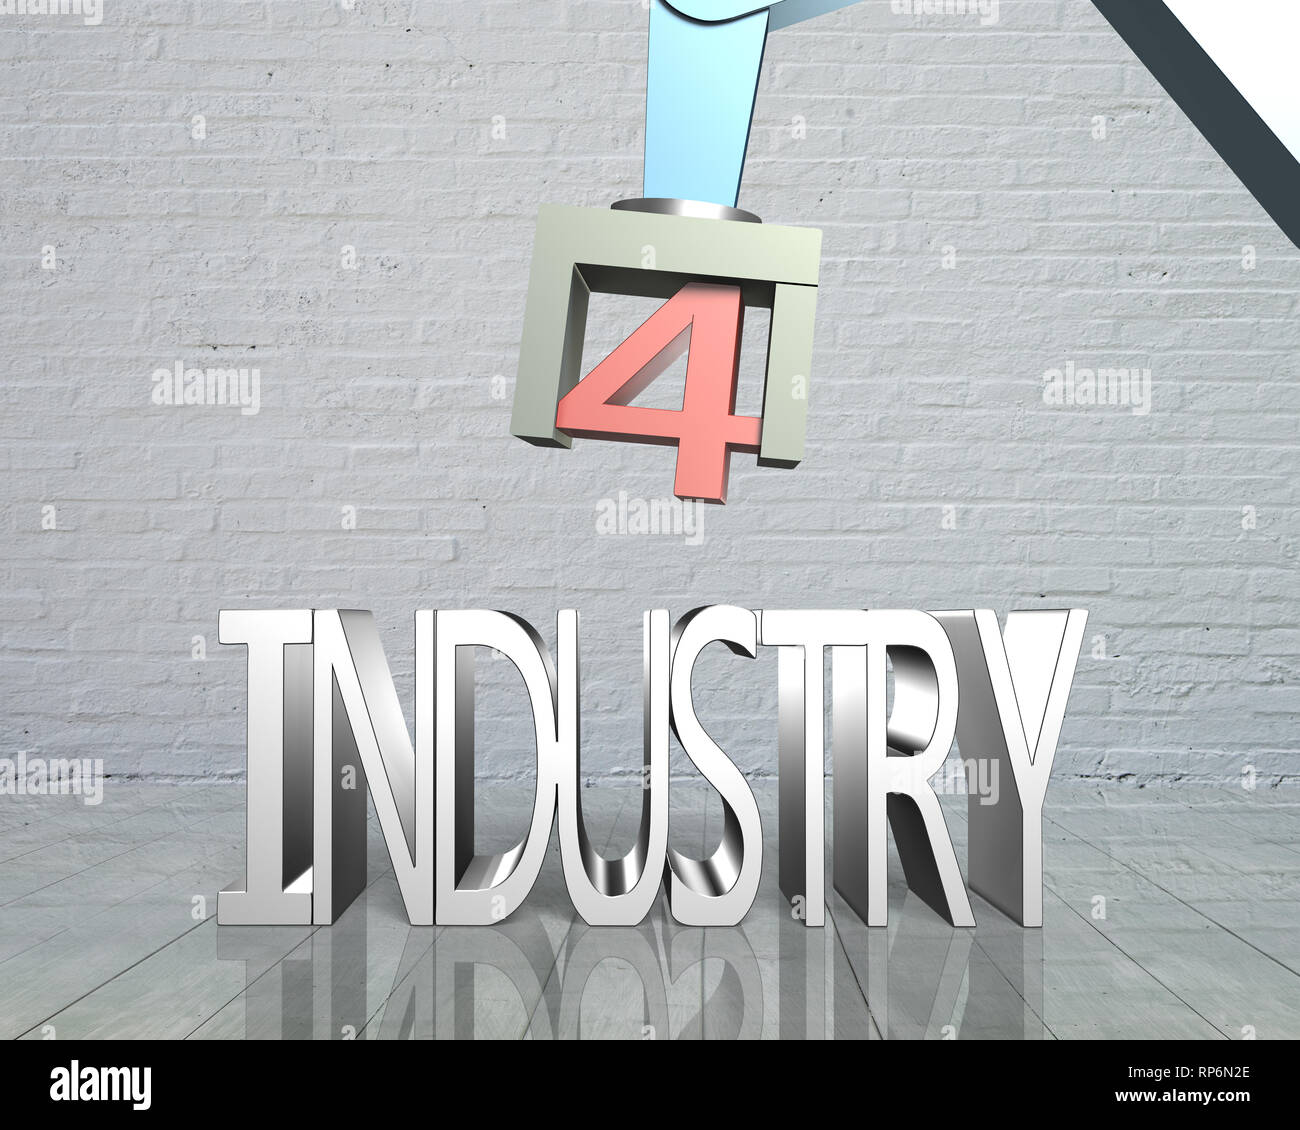 Concept de l'industrie 4.0. Bras de robot 3D et le texte de l'industrie 4.0, avec des briques mur arrière-plan. Banque D'Images